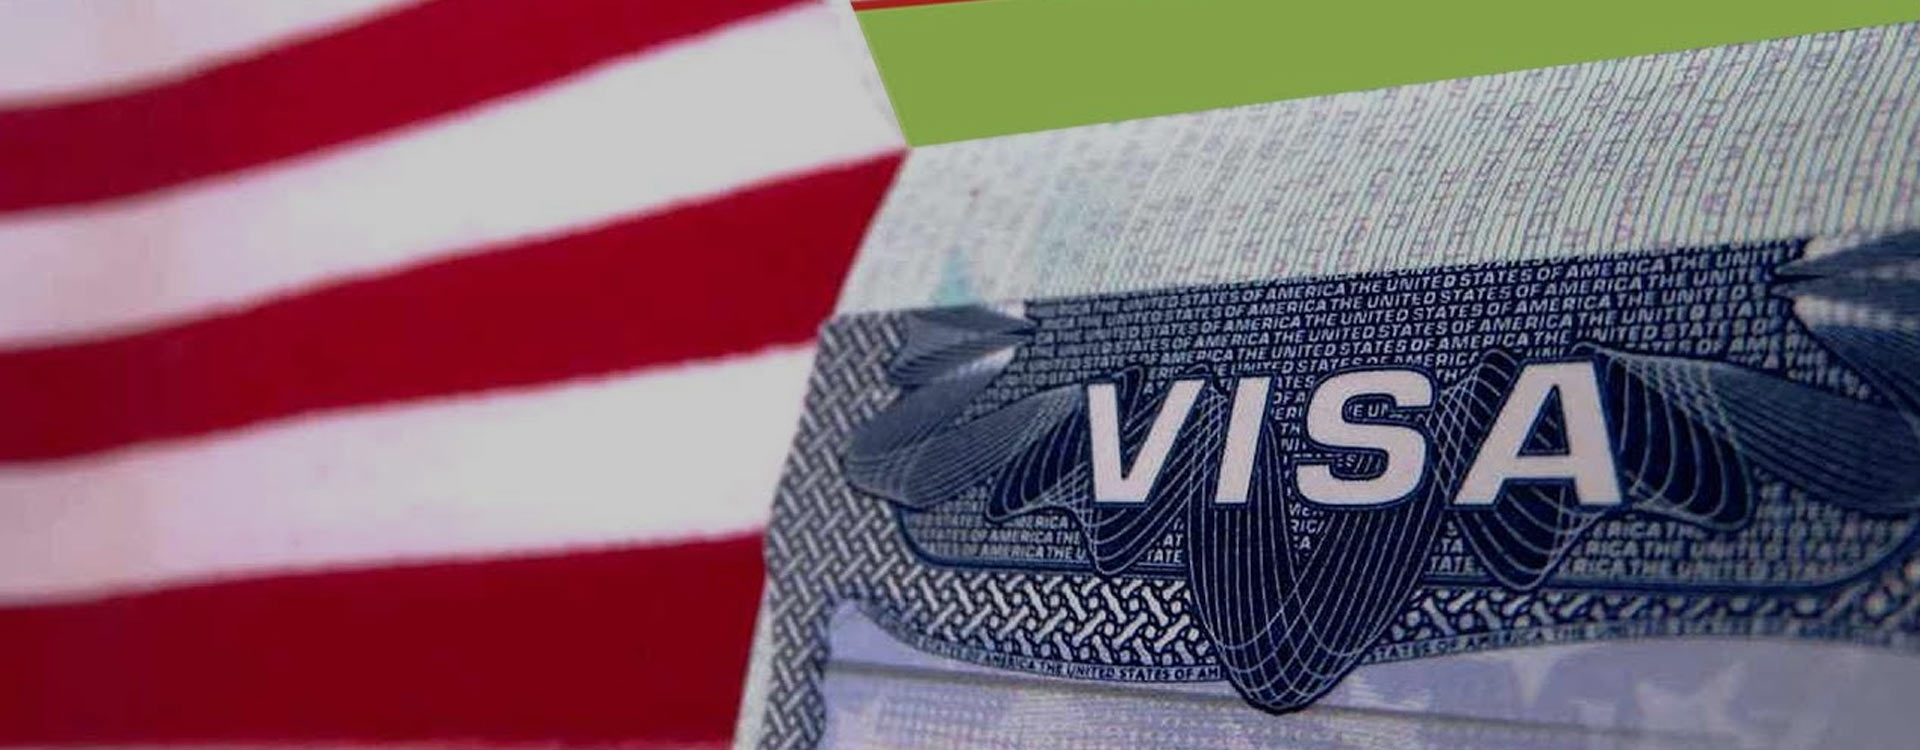 Visitor visa. H1b visa. Американская виза. Visa USA. Виза в США.